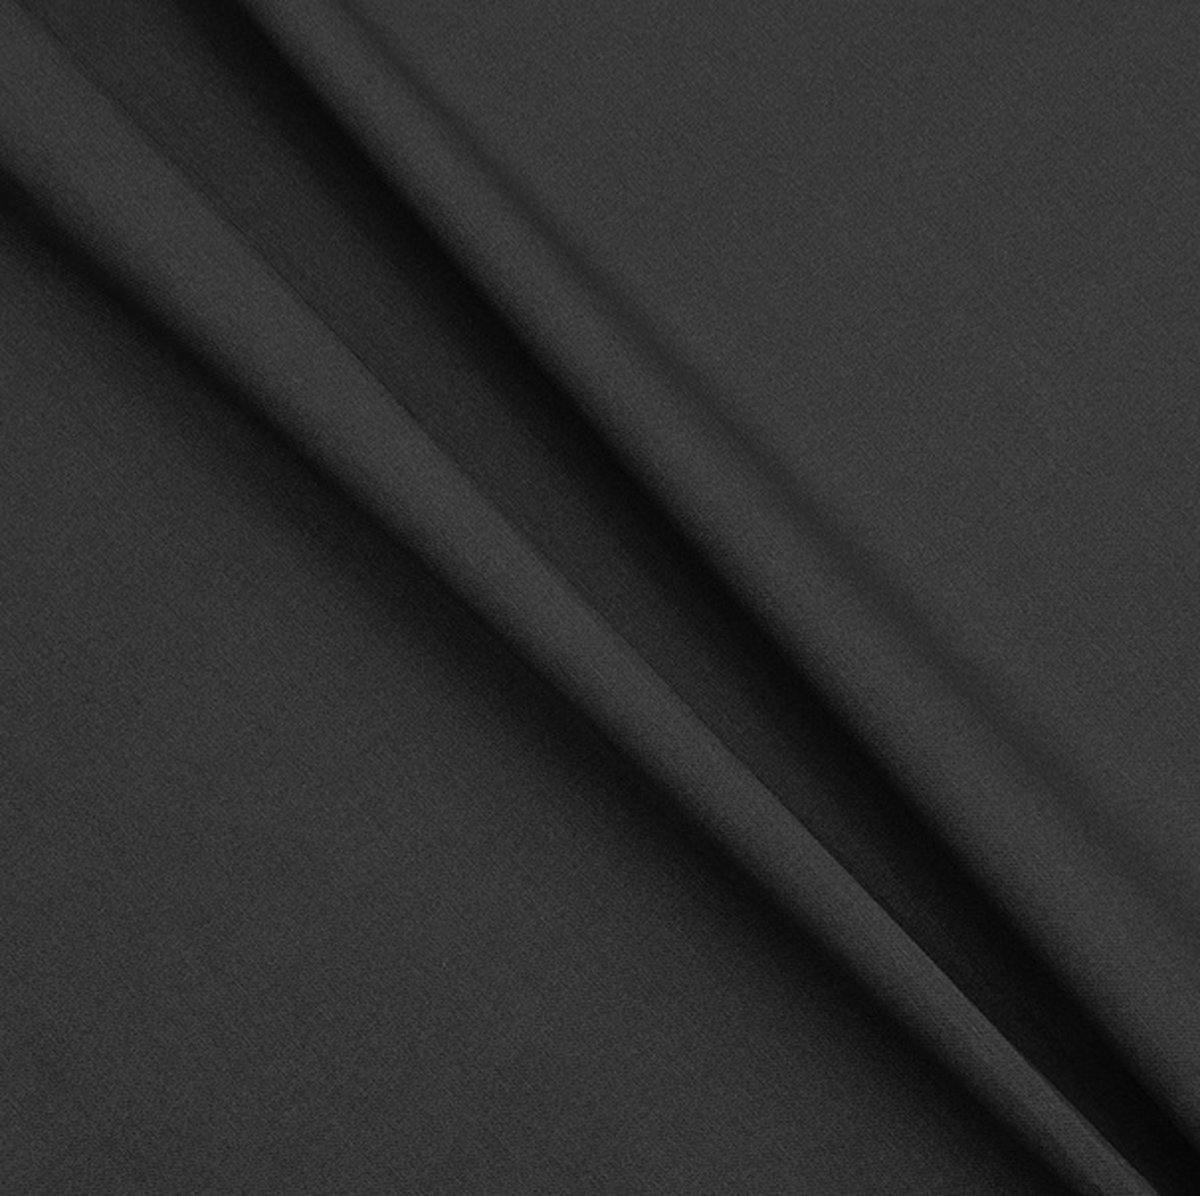 Gecoat tafelkleed/tafellinnen - Afwasbaar - Op koker geleverd - kleur: effen zwart - 280x140cm